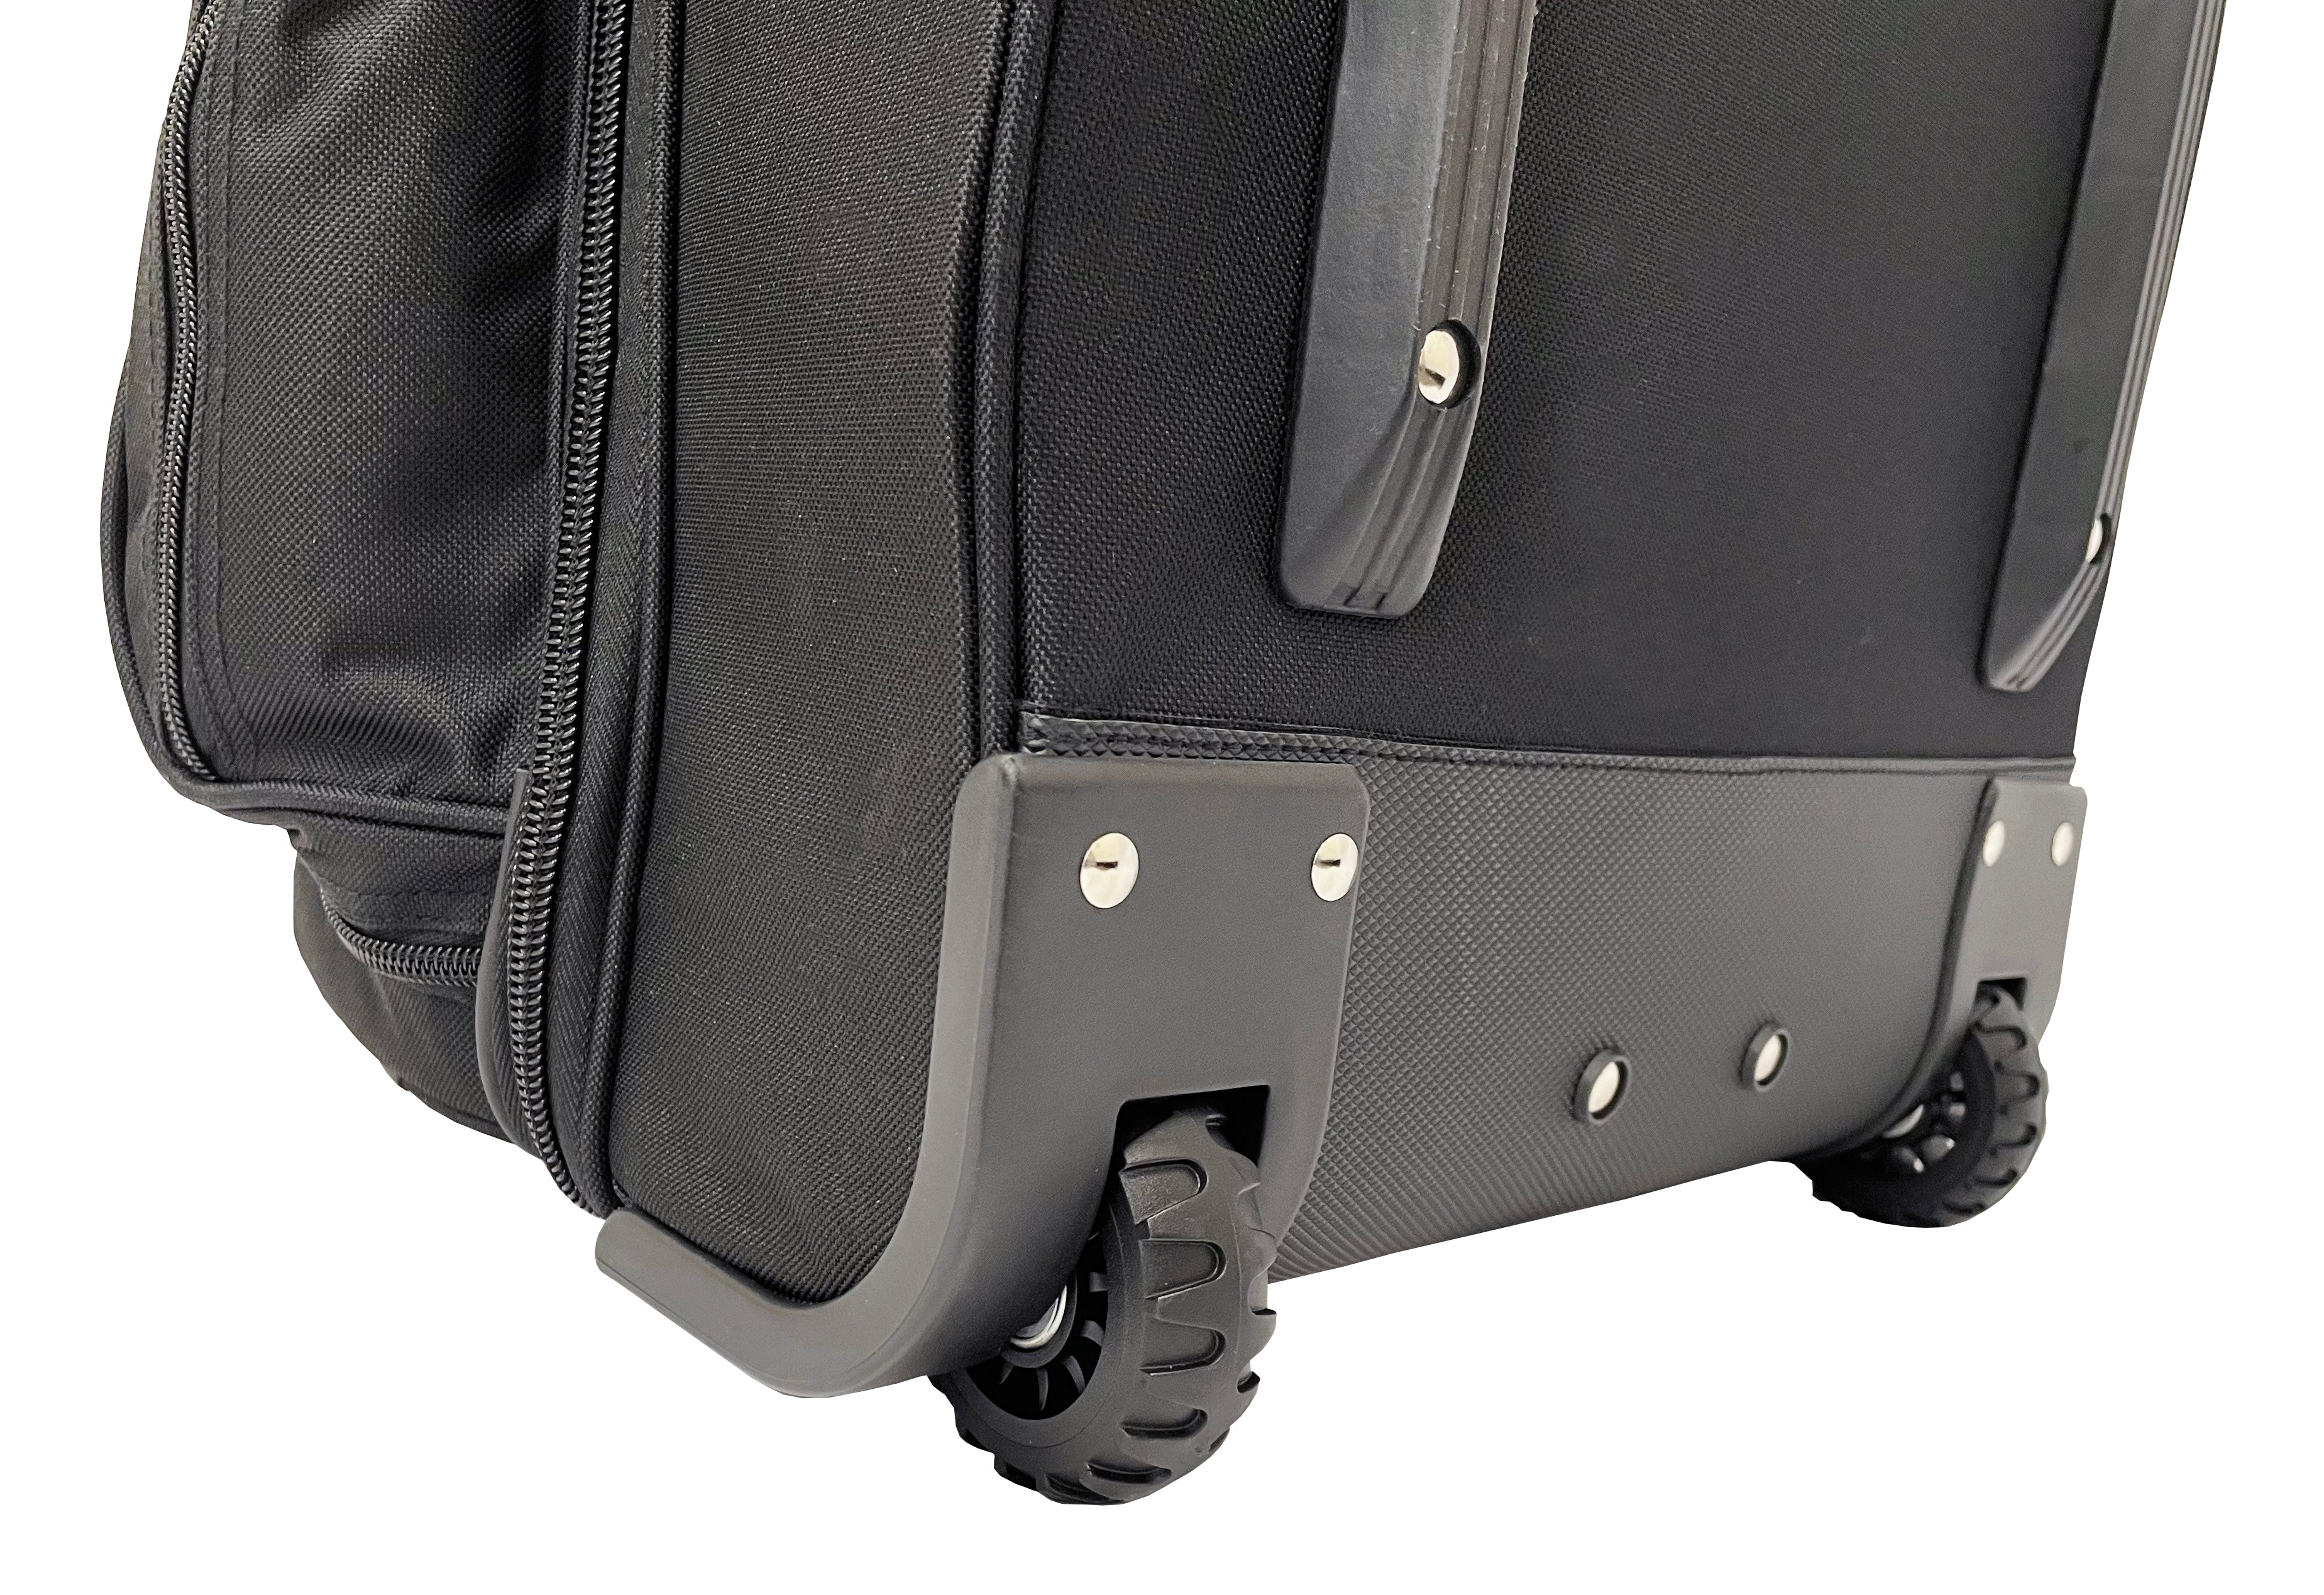 Ultimate Equipment Bag Weekender with Wheels